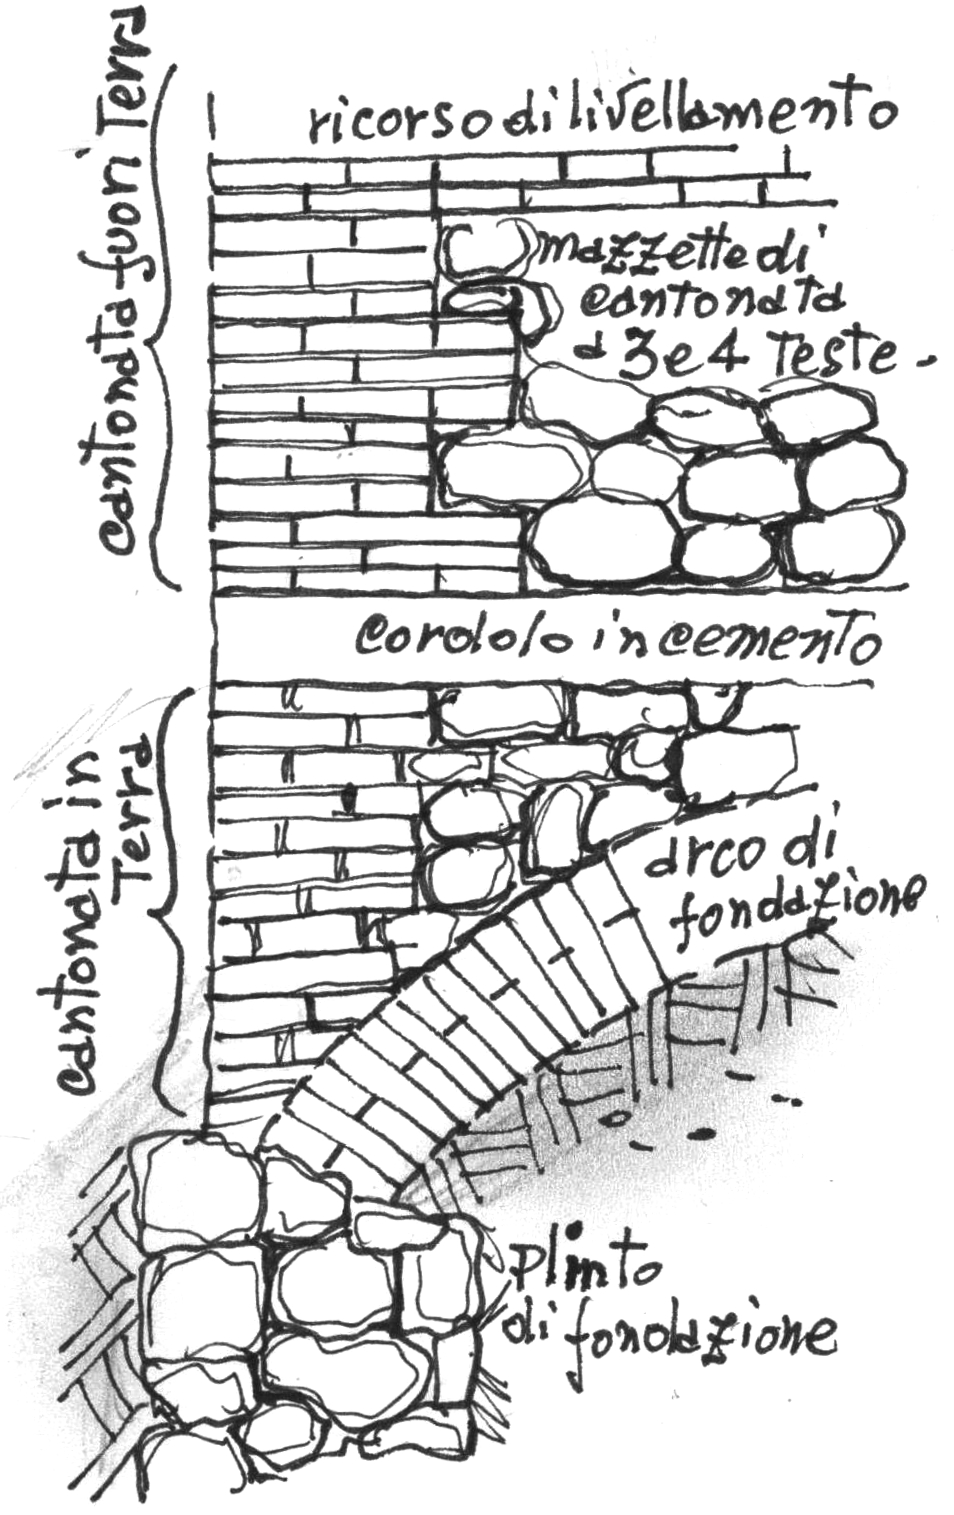 Dettaglio stacco muratura - disegno di Luciano Scali